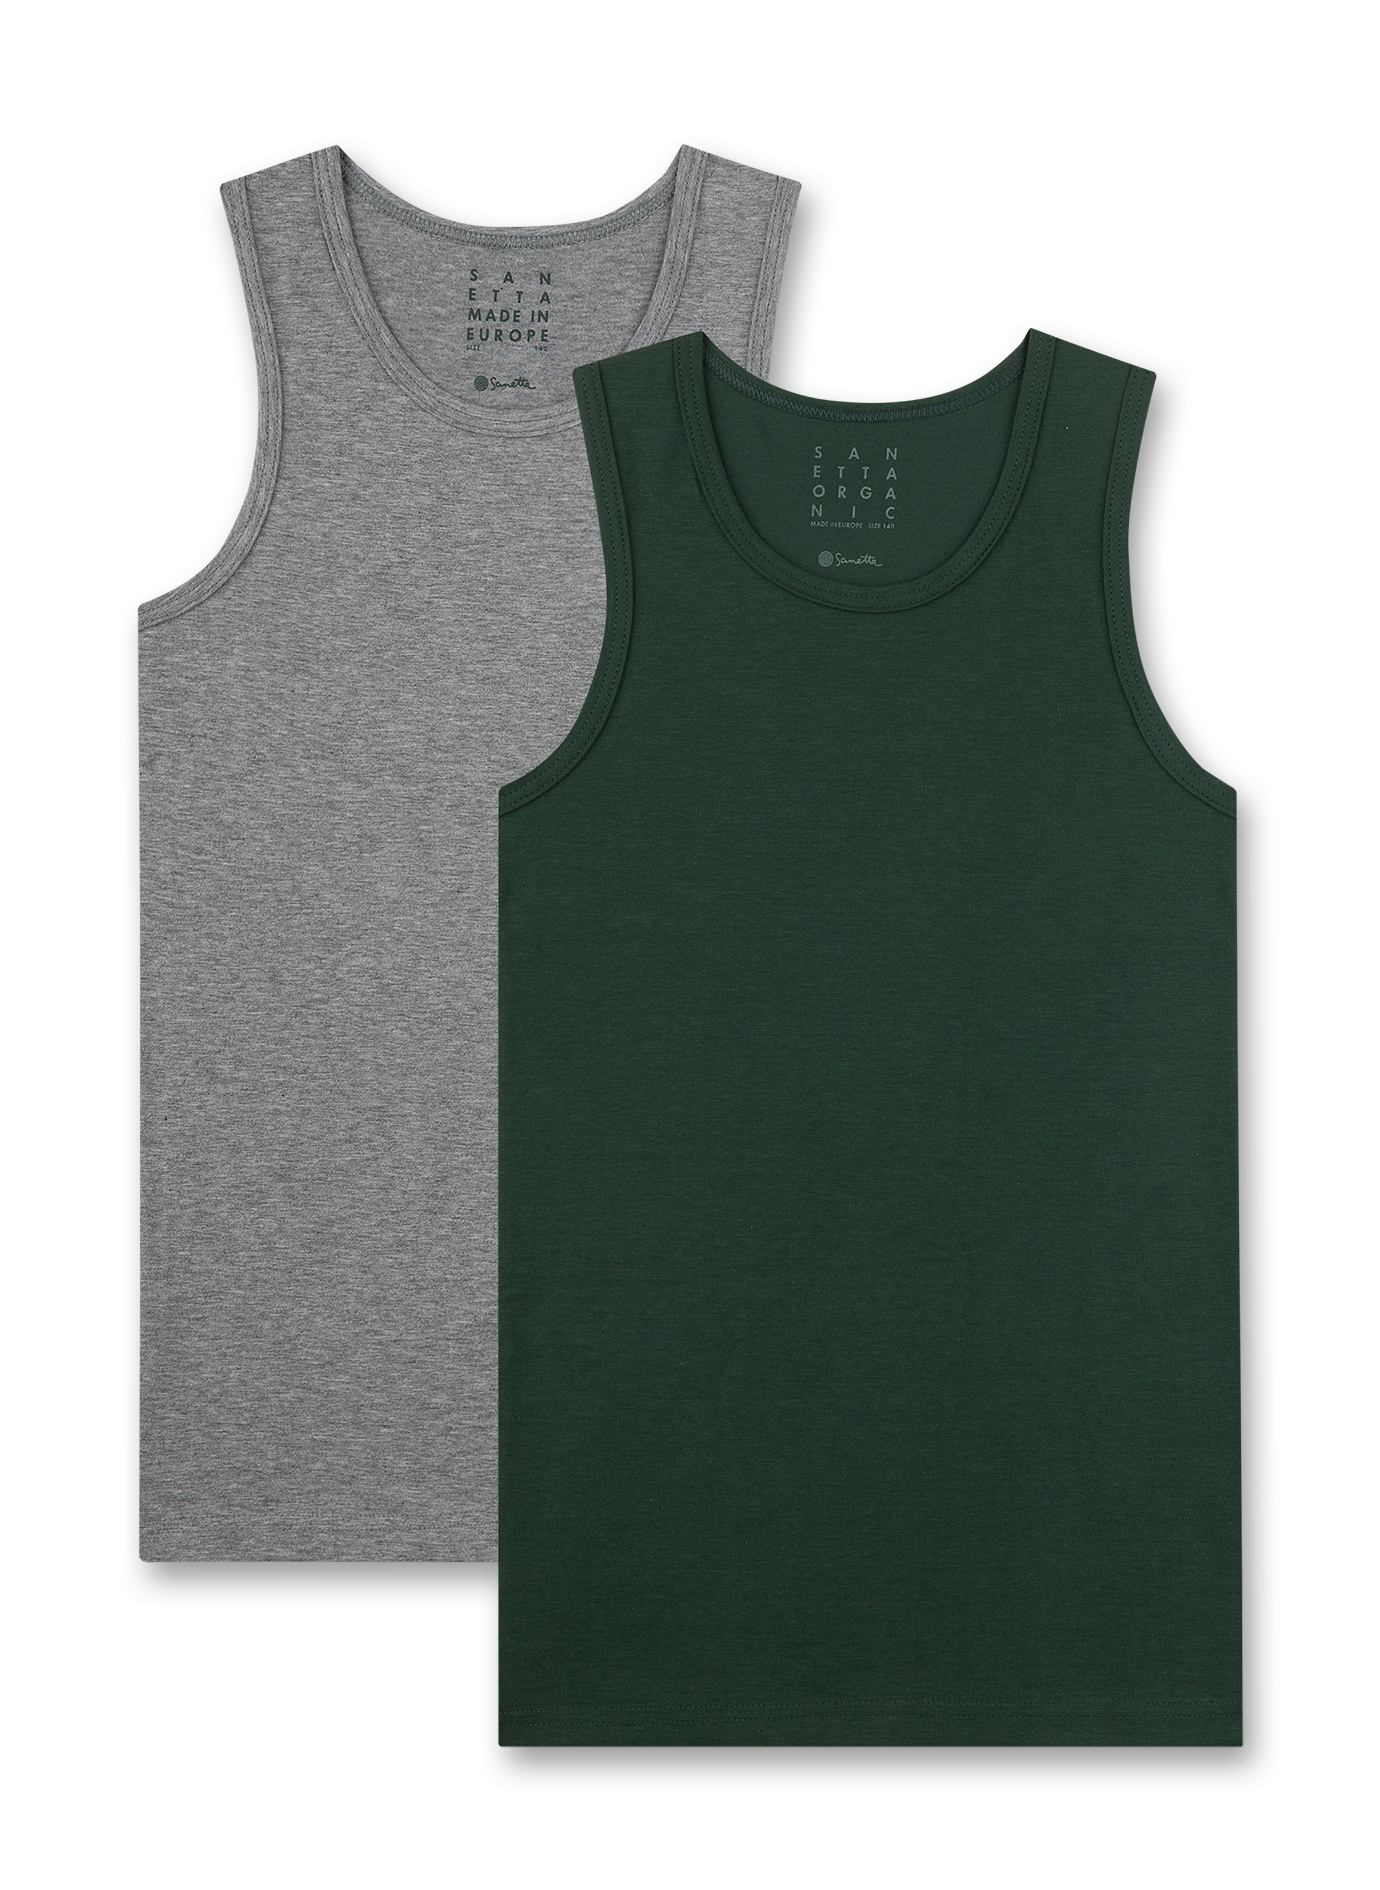 Jungen-Unterhemden (Doppelpack) Grün und Graumelange